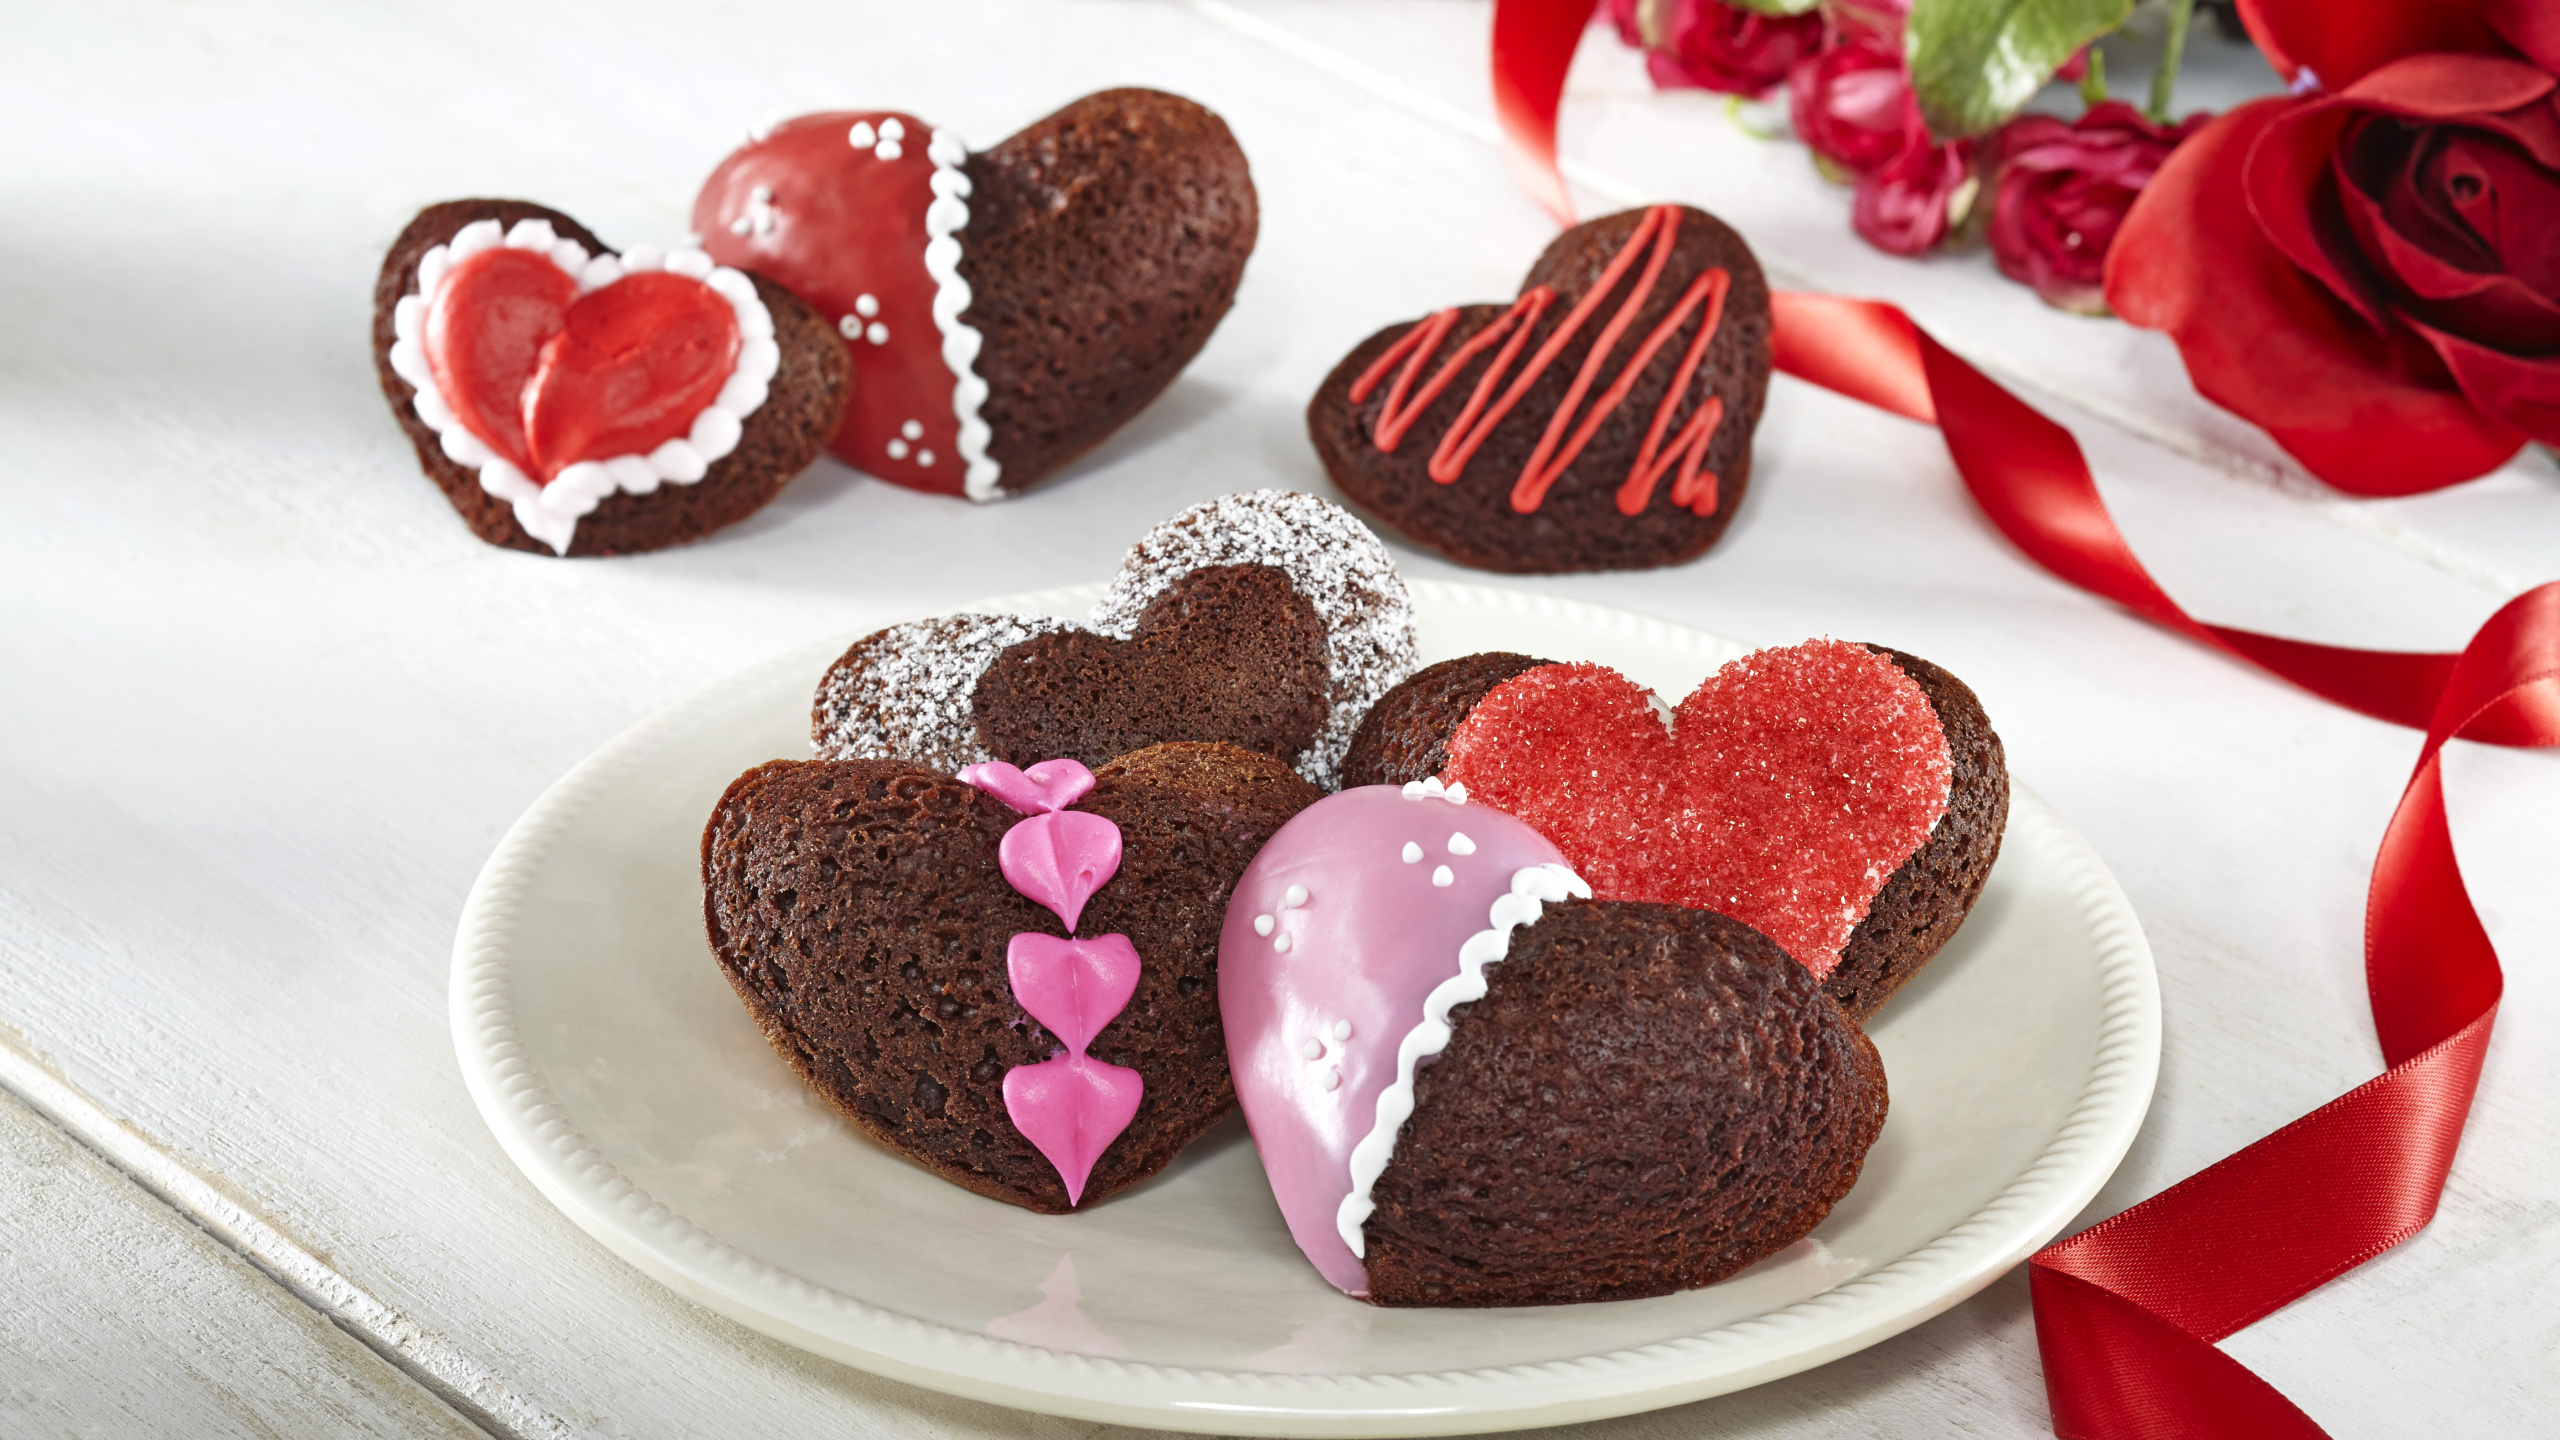 Gâteau au Chocolat, Dessert, le Jour de Valentines, Chocolat, Aliment. Wallpaper in 2560x1440 Resolution